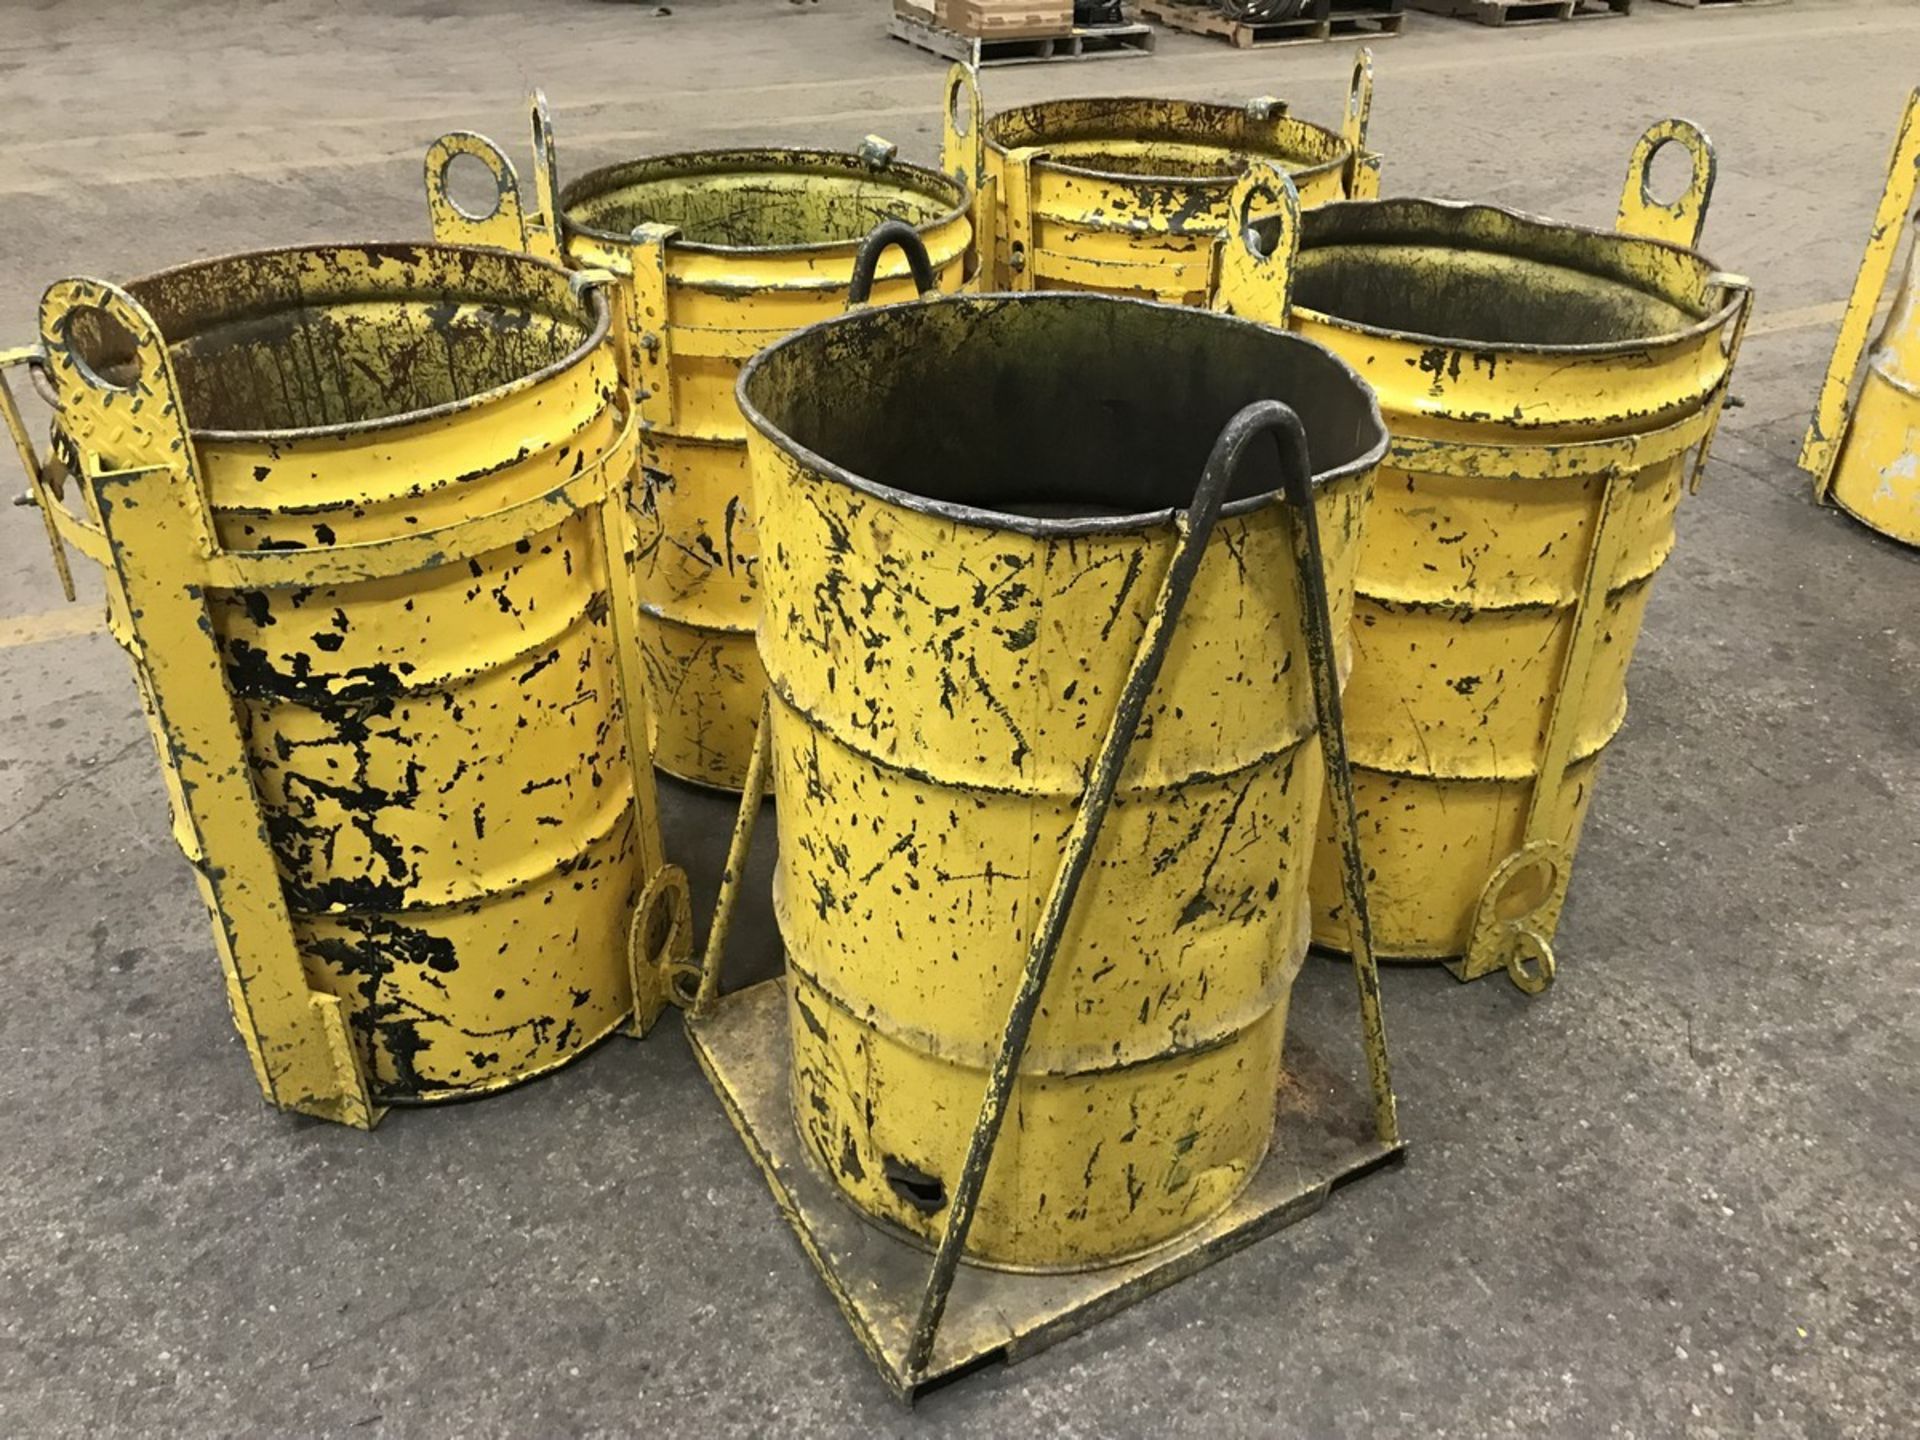 Five shopbuilt crane lift scrap buckets - Image 2 of 2